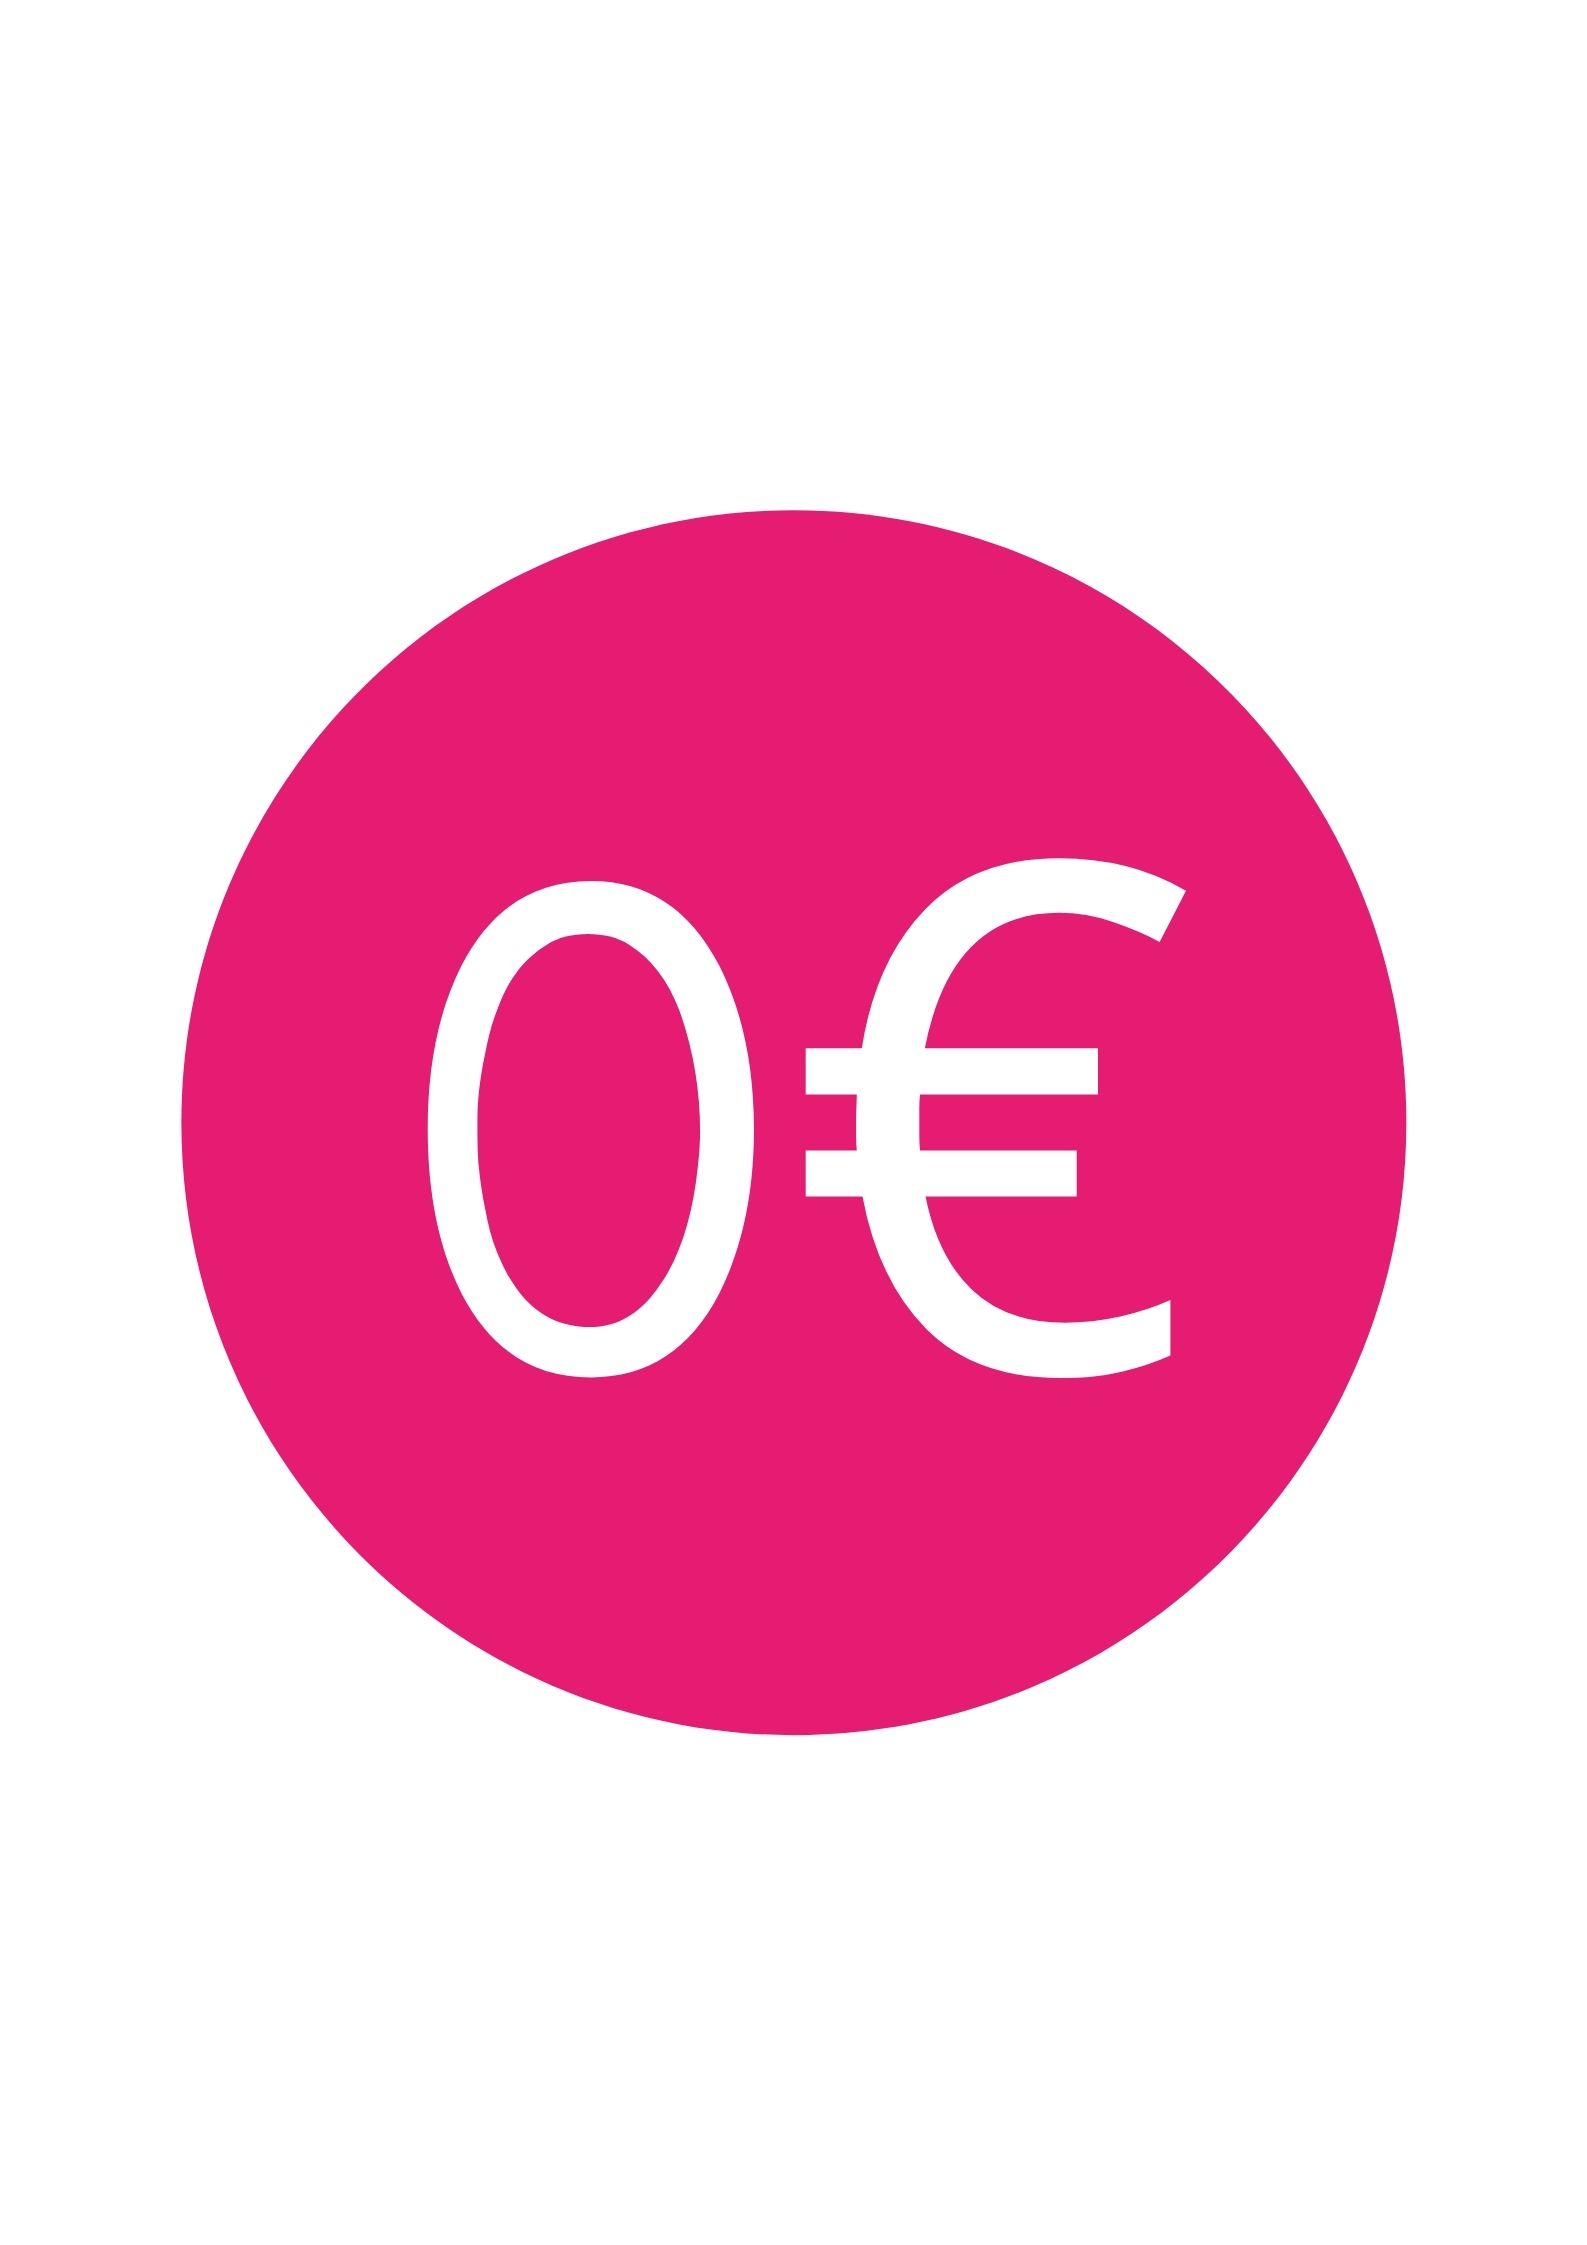 0€ GRATUIT